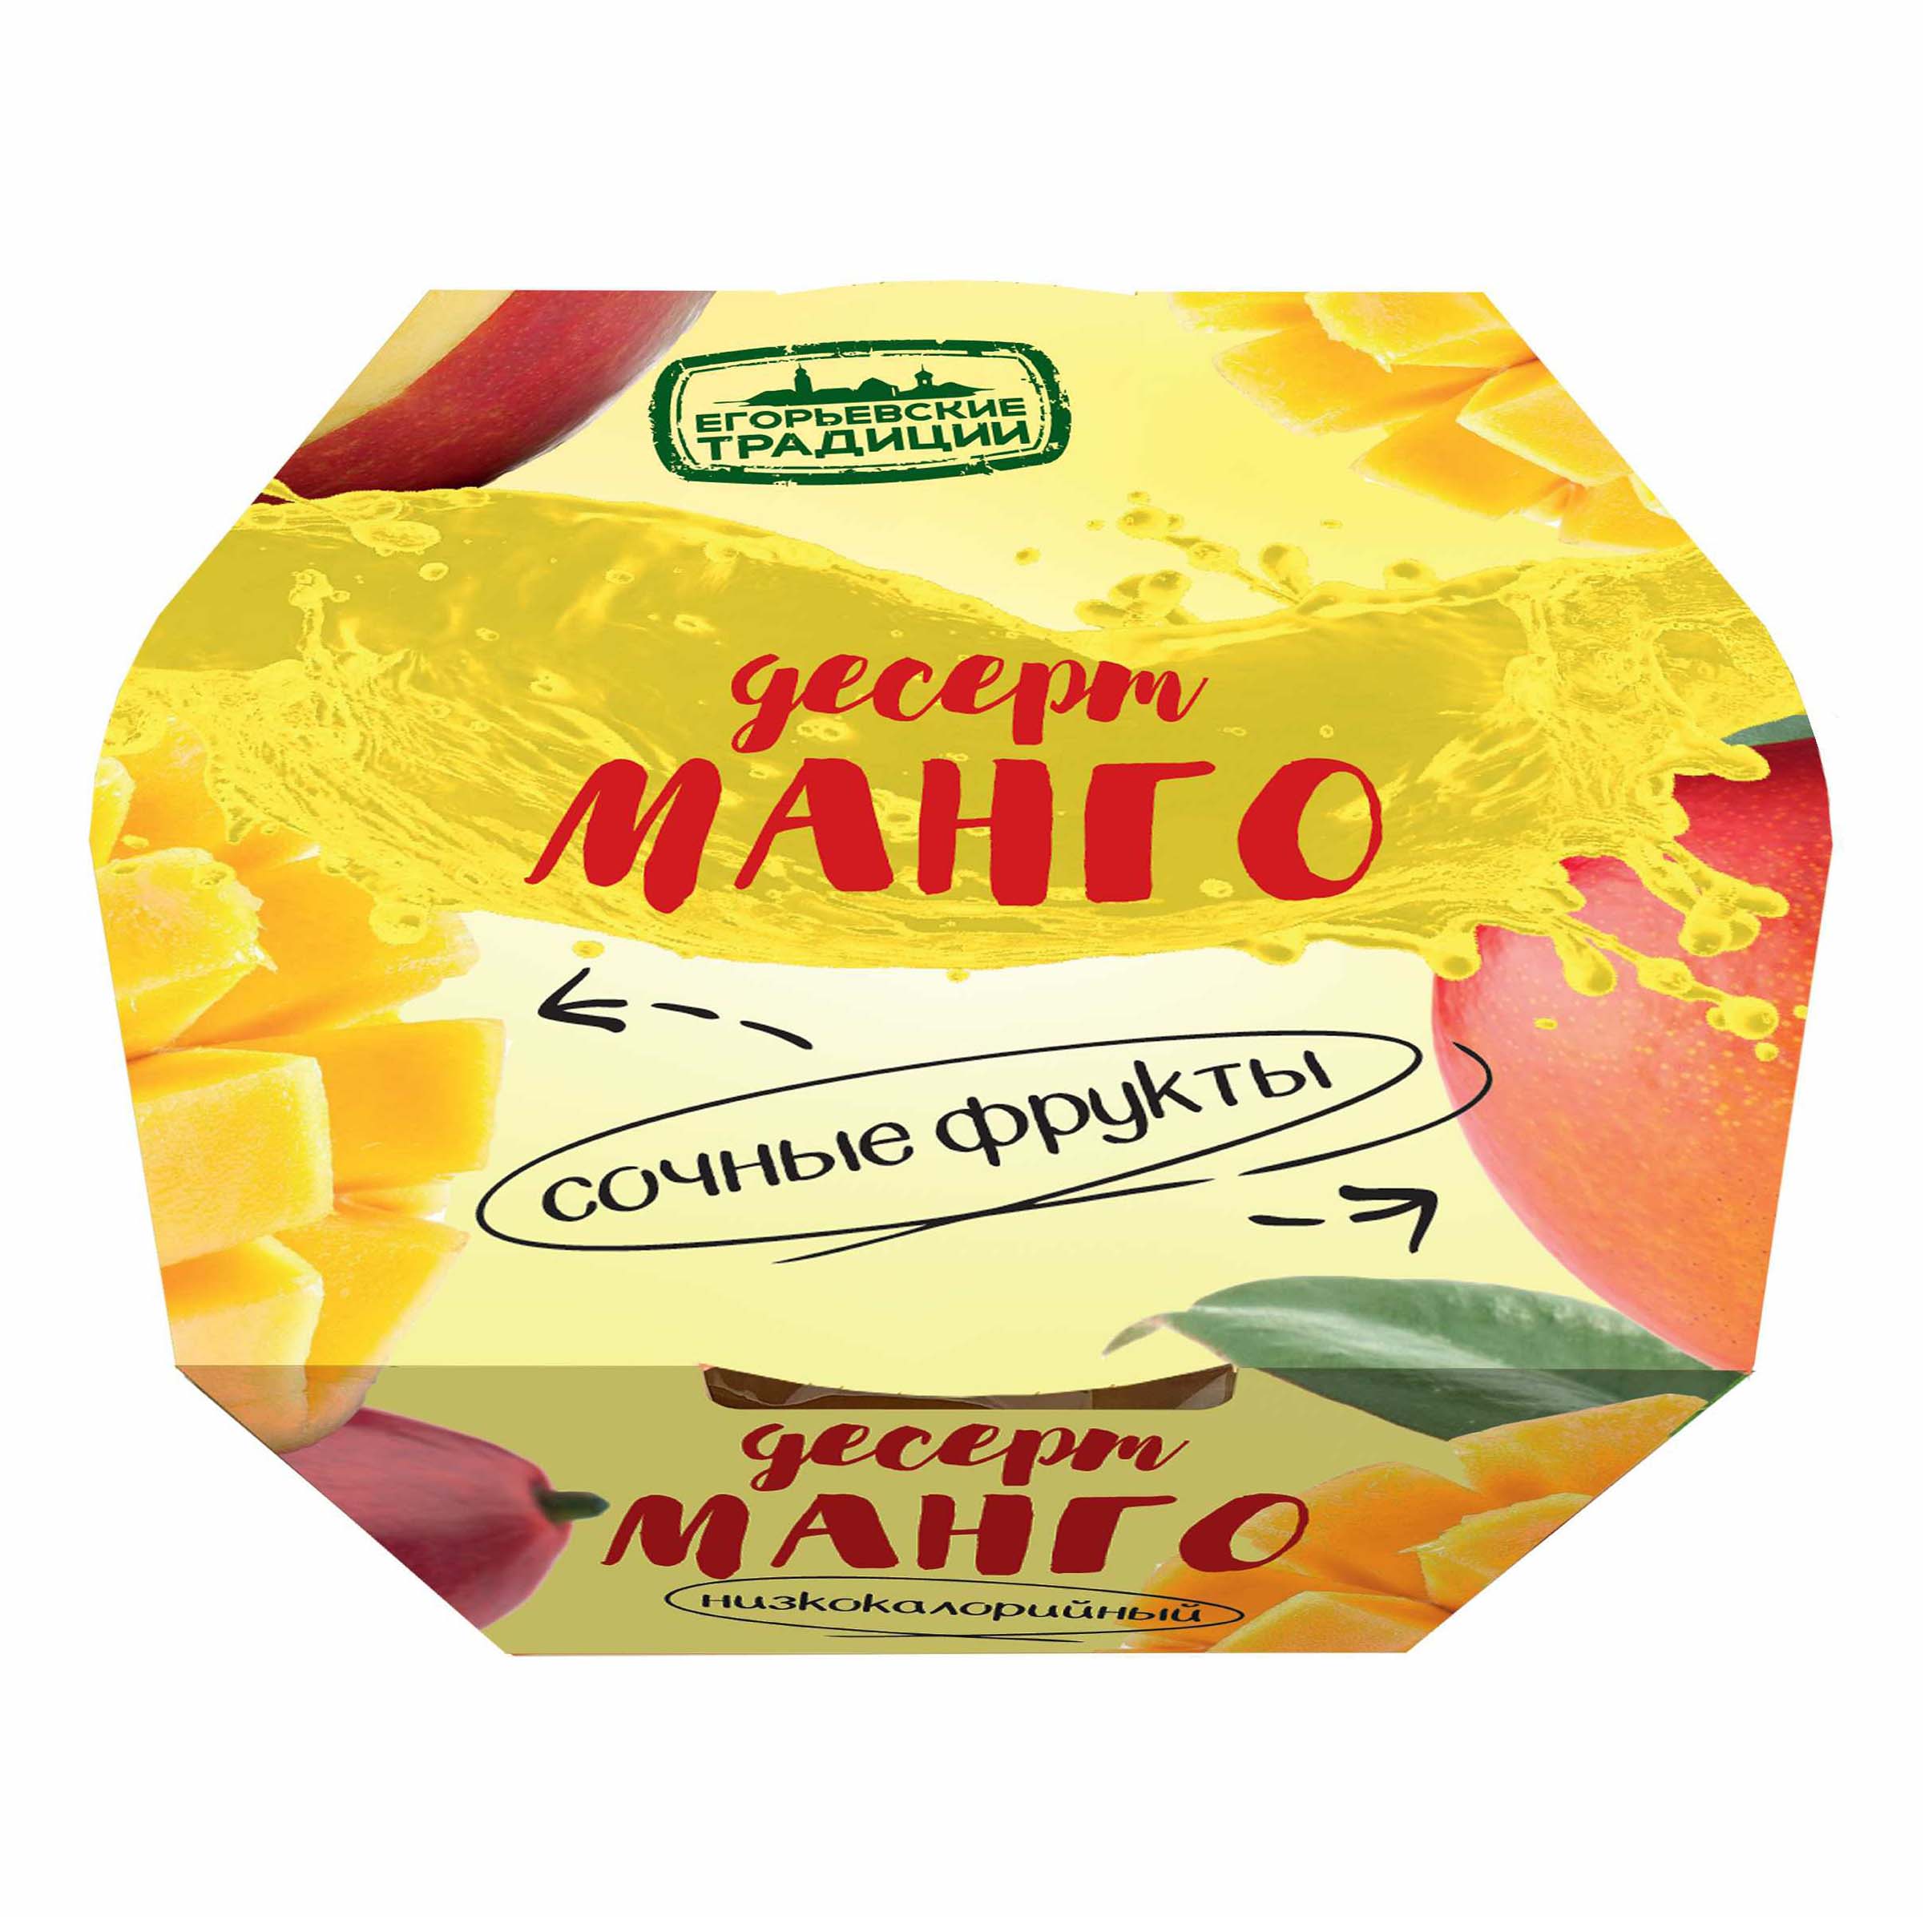 Десерт Егорьевские Традиции Манго без сахара ( Россия)  120г